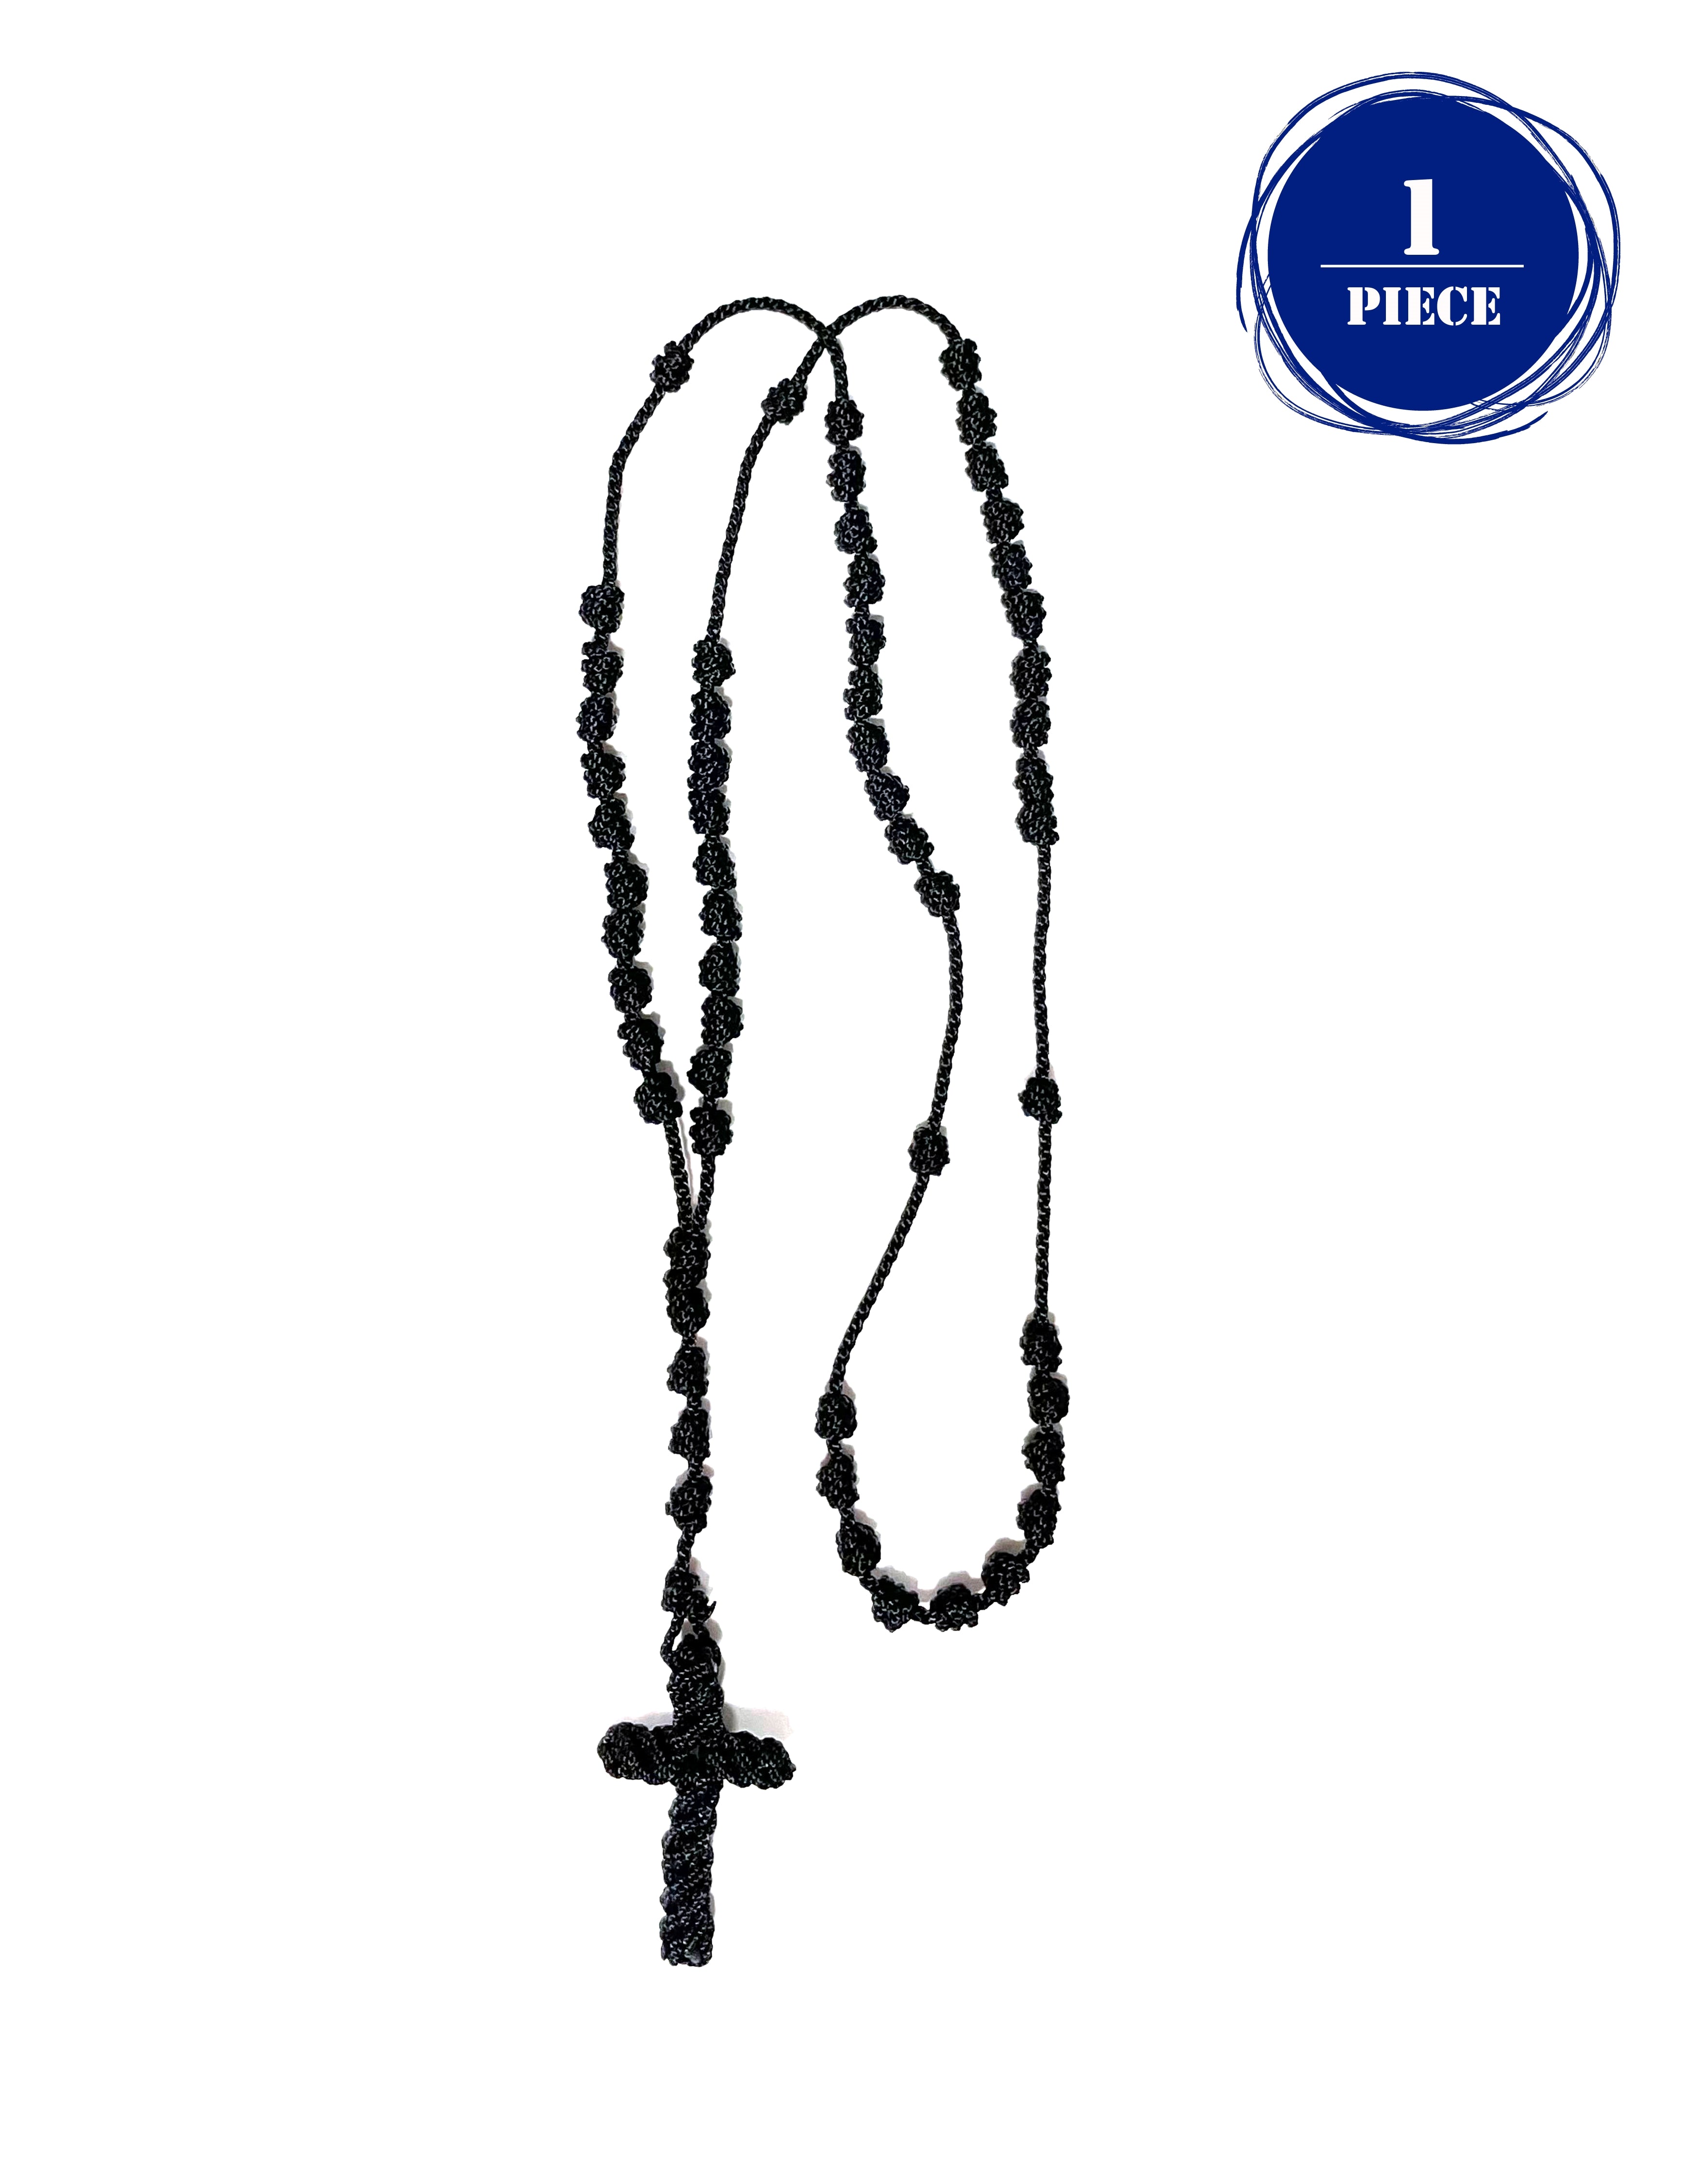 Knotted rosary - cord rosary, thread rosary - Handmade Rosary. Rosarios de cordón anudado y cruz tejida